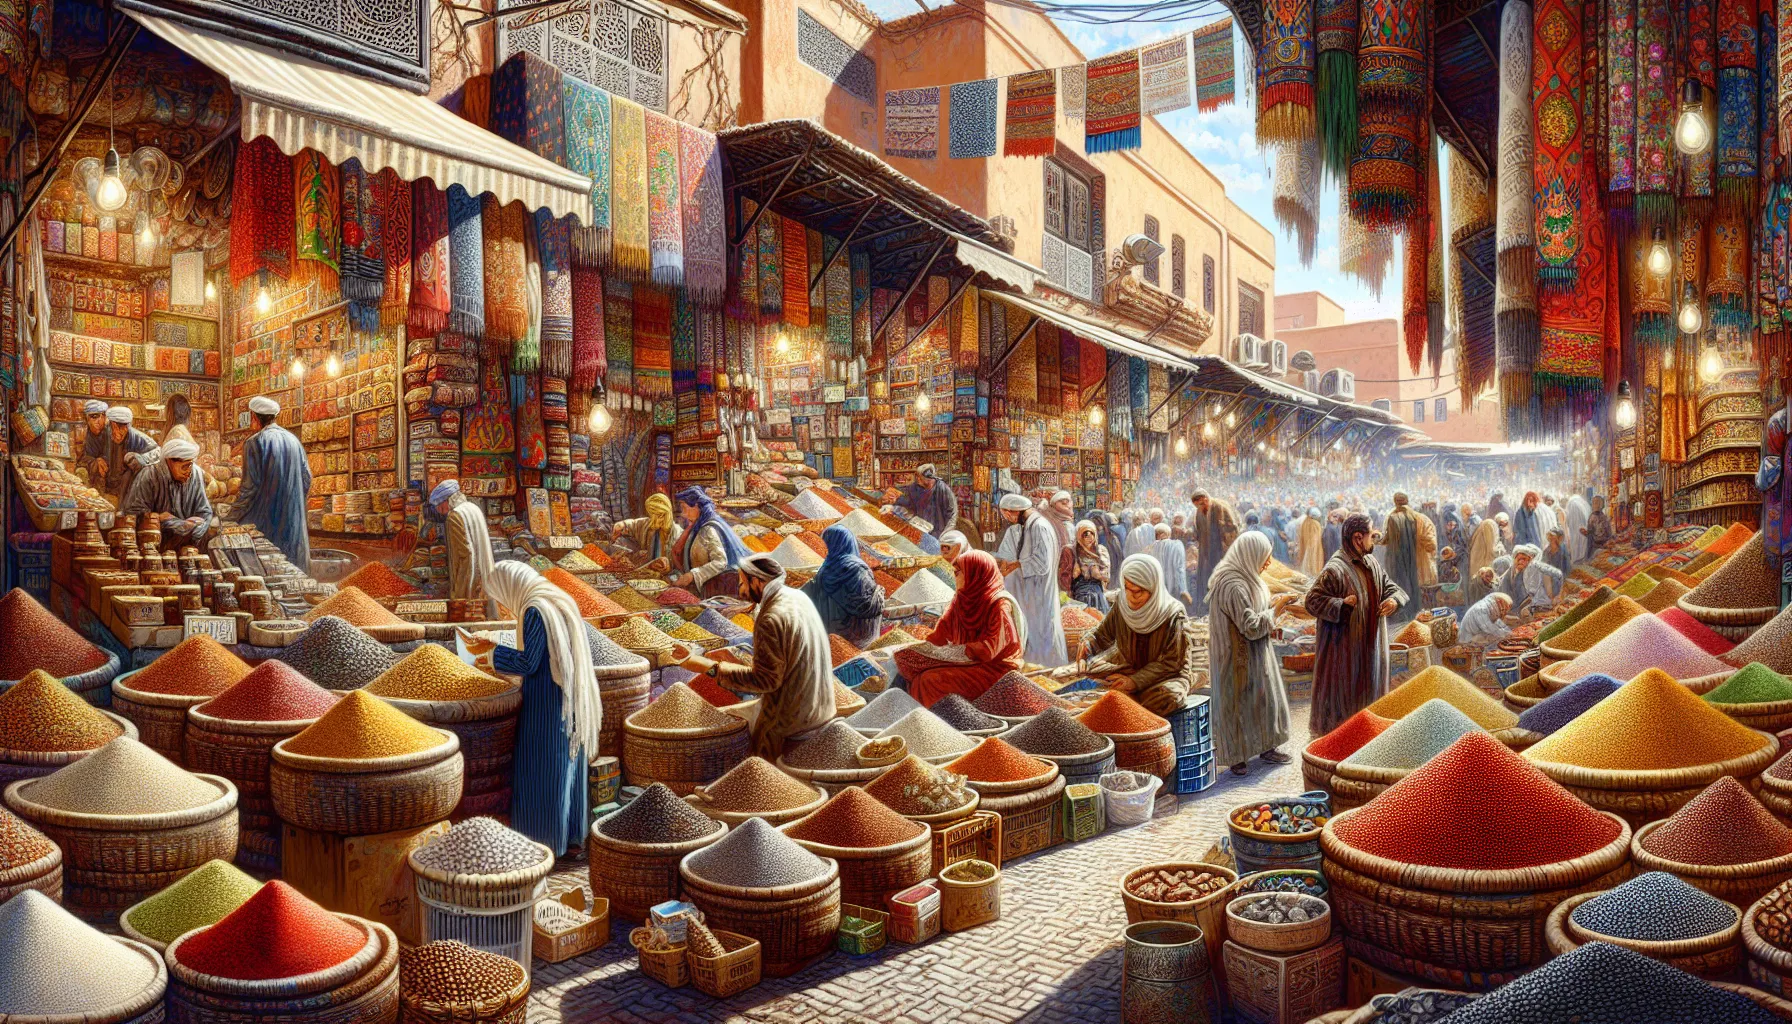 Marrocos é um país fascinante, rico em cultura e tradições. Localizado no noroeste da África, este país oferece uma experiência única aos visitantes, com suas paisagens deslumbrantes, cidades históricas e uma mistura de influências árabes, berberes e europeias.

Uma das principais atrações de Marrocos é sua capital, Rabat. Esta cidade encantadora possui uma med